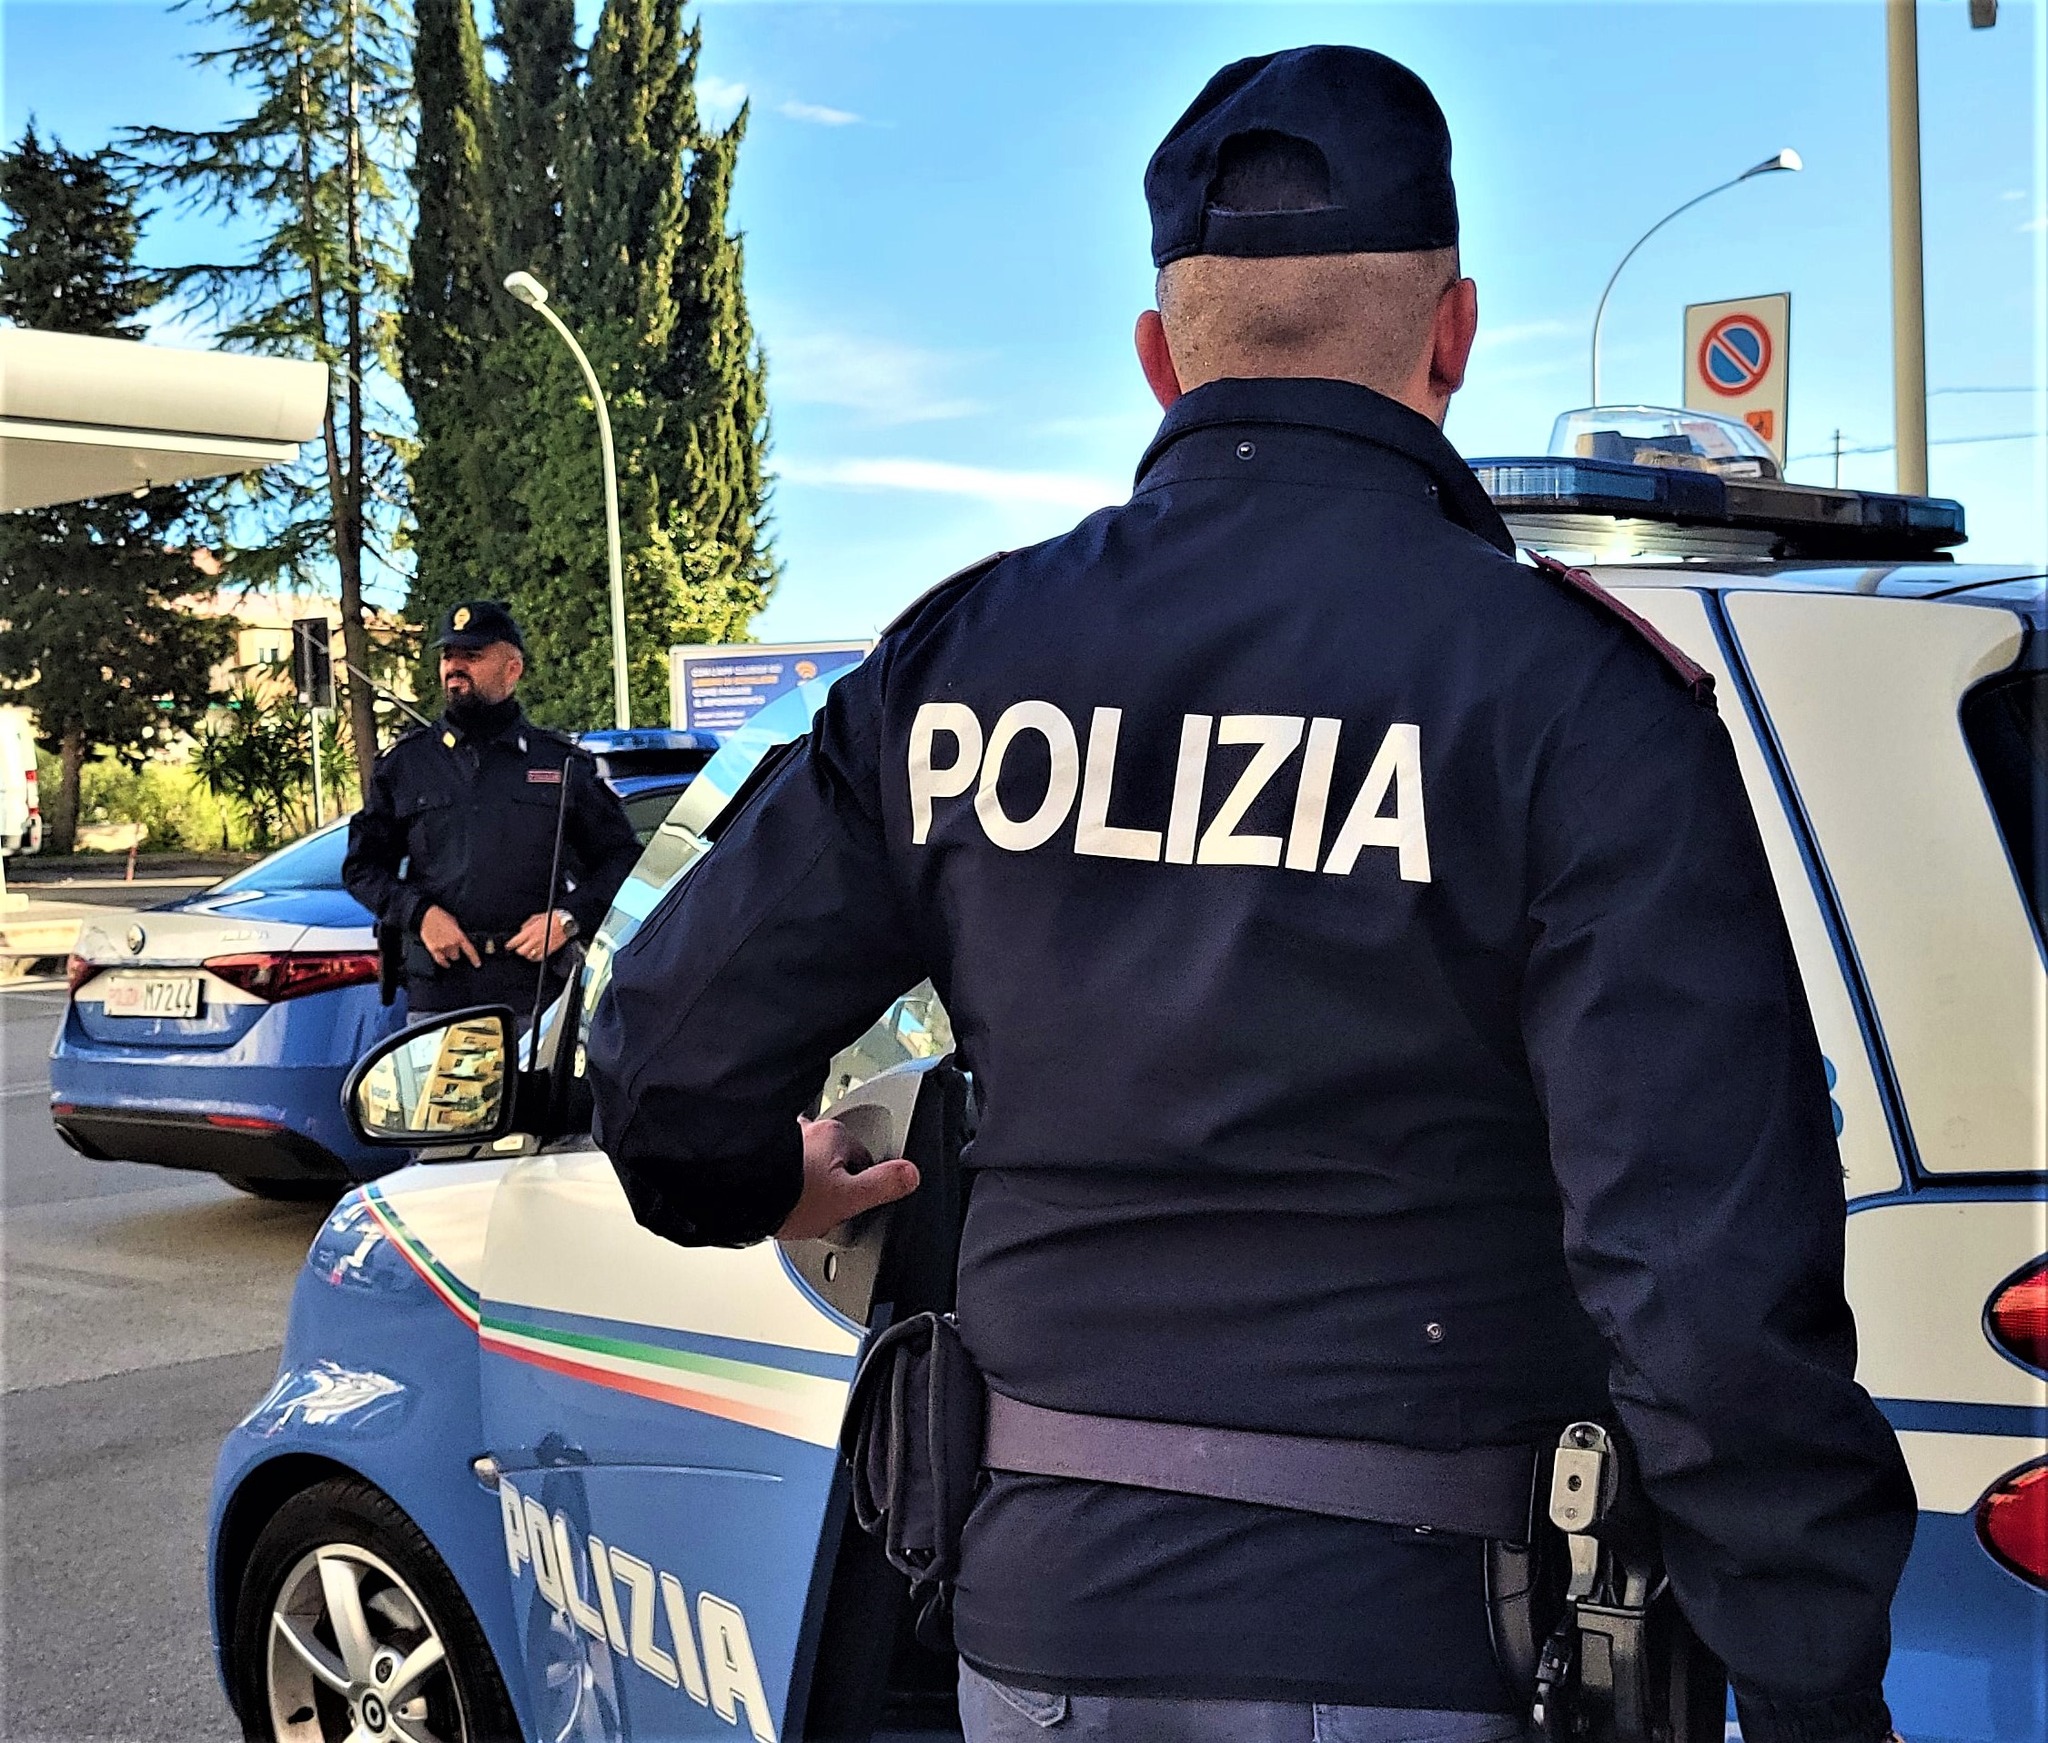 Violazioni in materia di circolazione stradale: proseguono senza sosta i controlli della Polizia in provincia di Caltanissetta